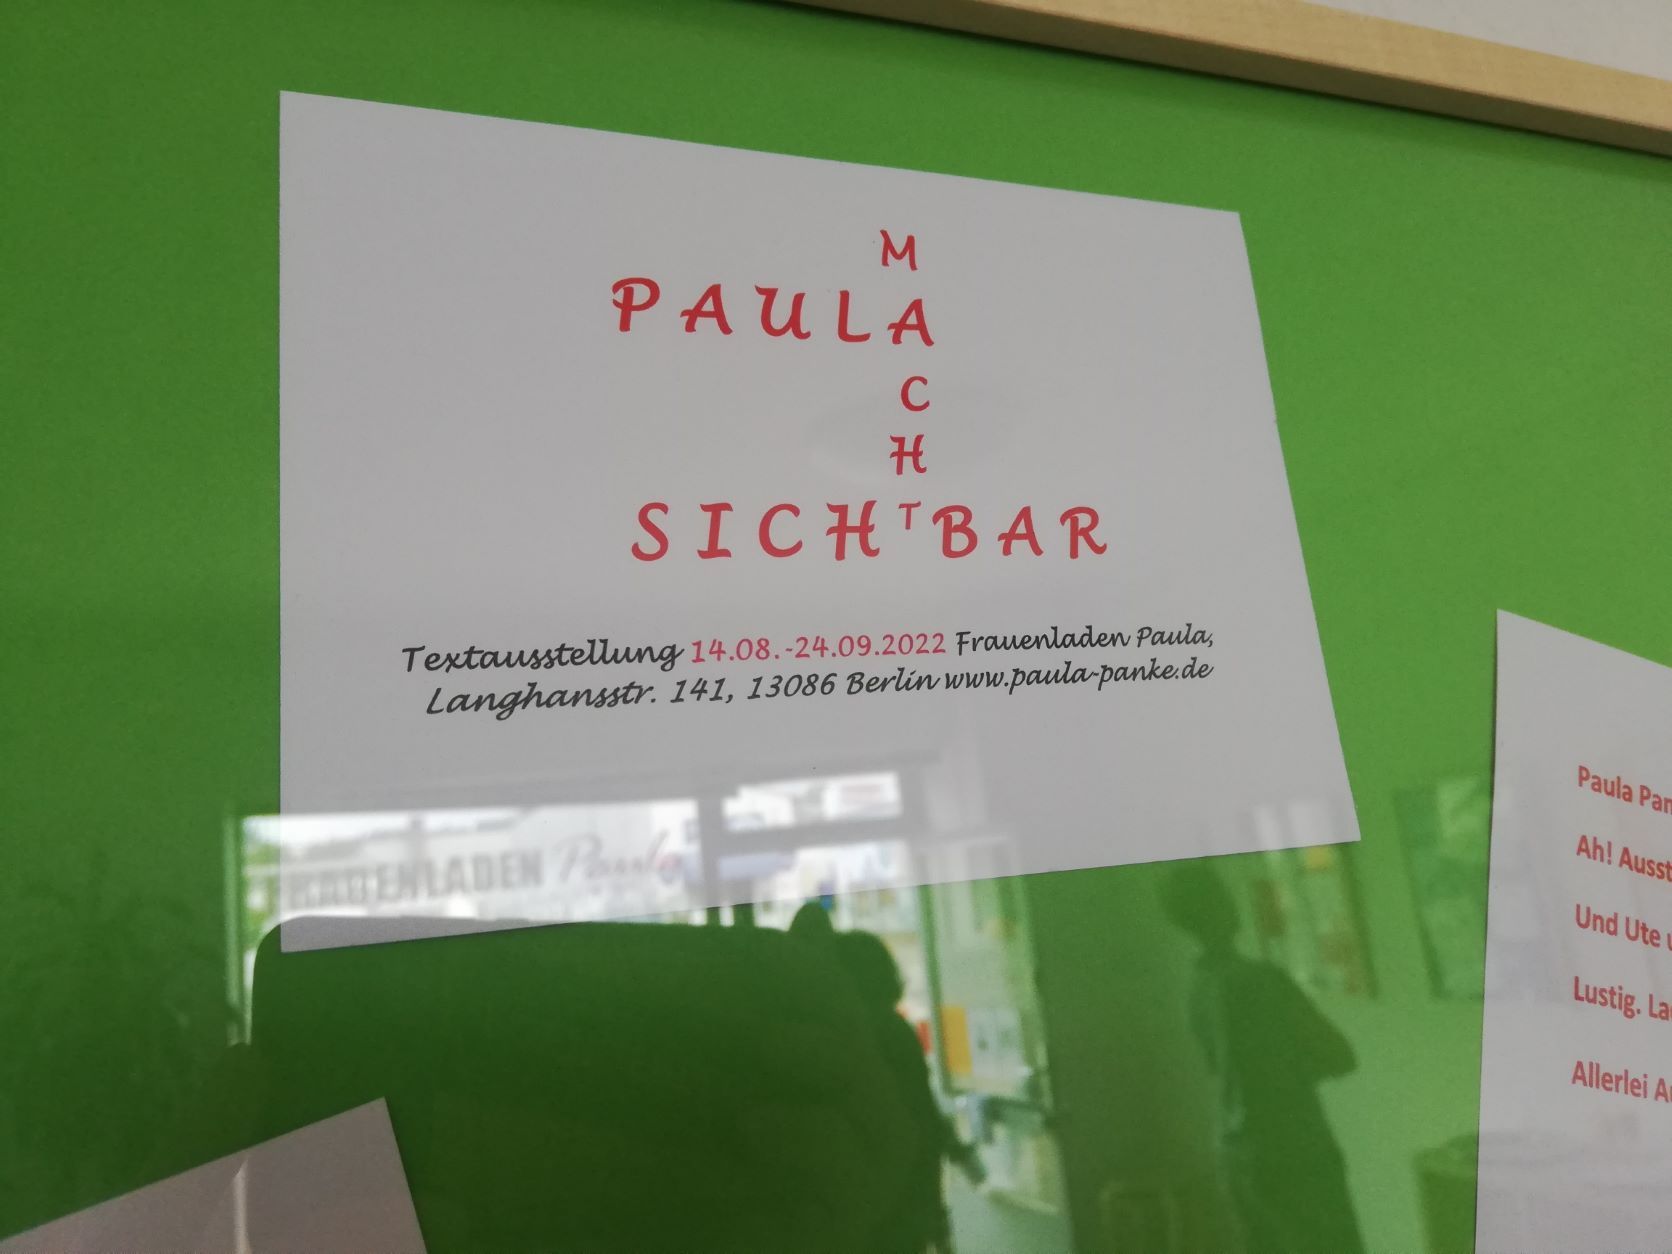 Flyer "Paula macht sichtbar" der Ausstellung "Wir teilen Geschichte(n)" im Frauenladen Weissensee